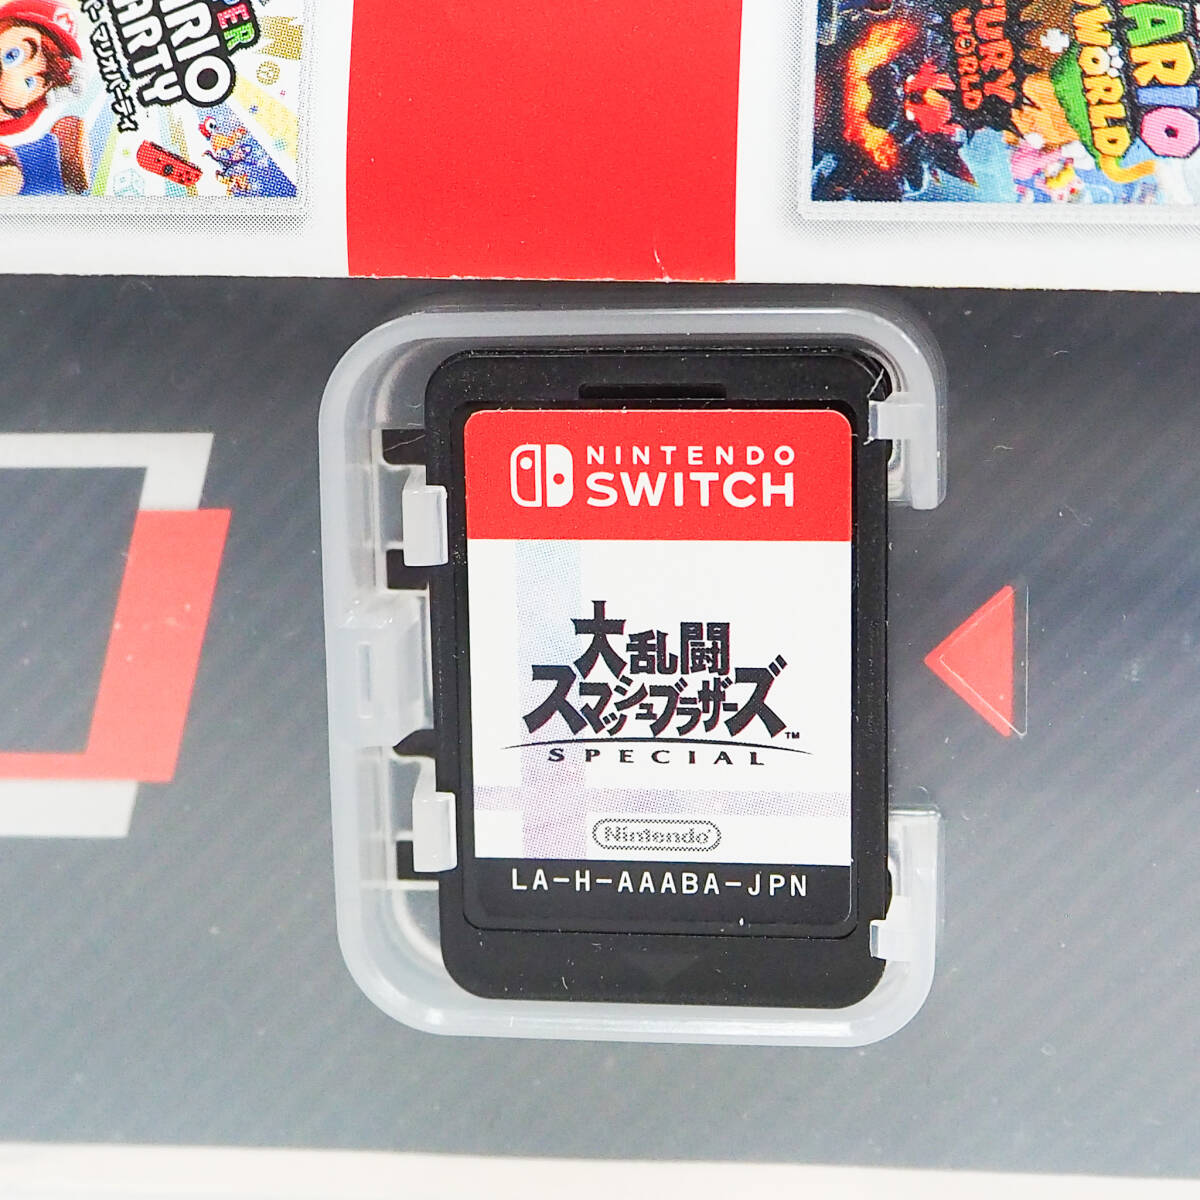 Nintendo ニンテンドー Switch スイッチ 大乱闘スマッシュブラザーズ SPECIAL スペシャル スマブラ CO3373_画像3